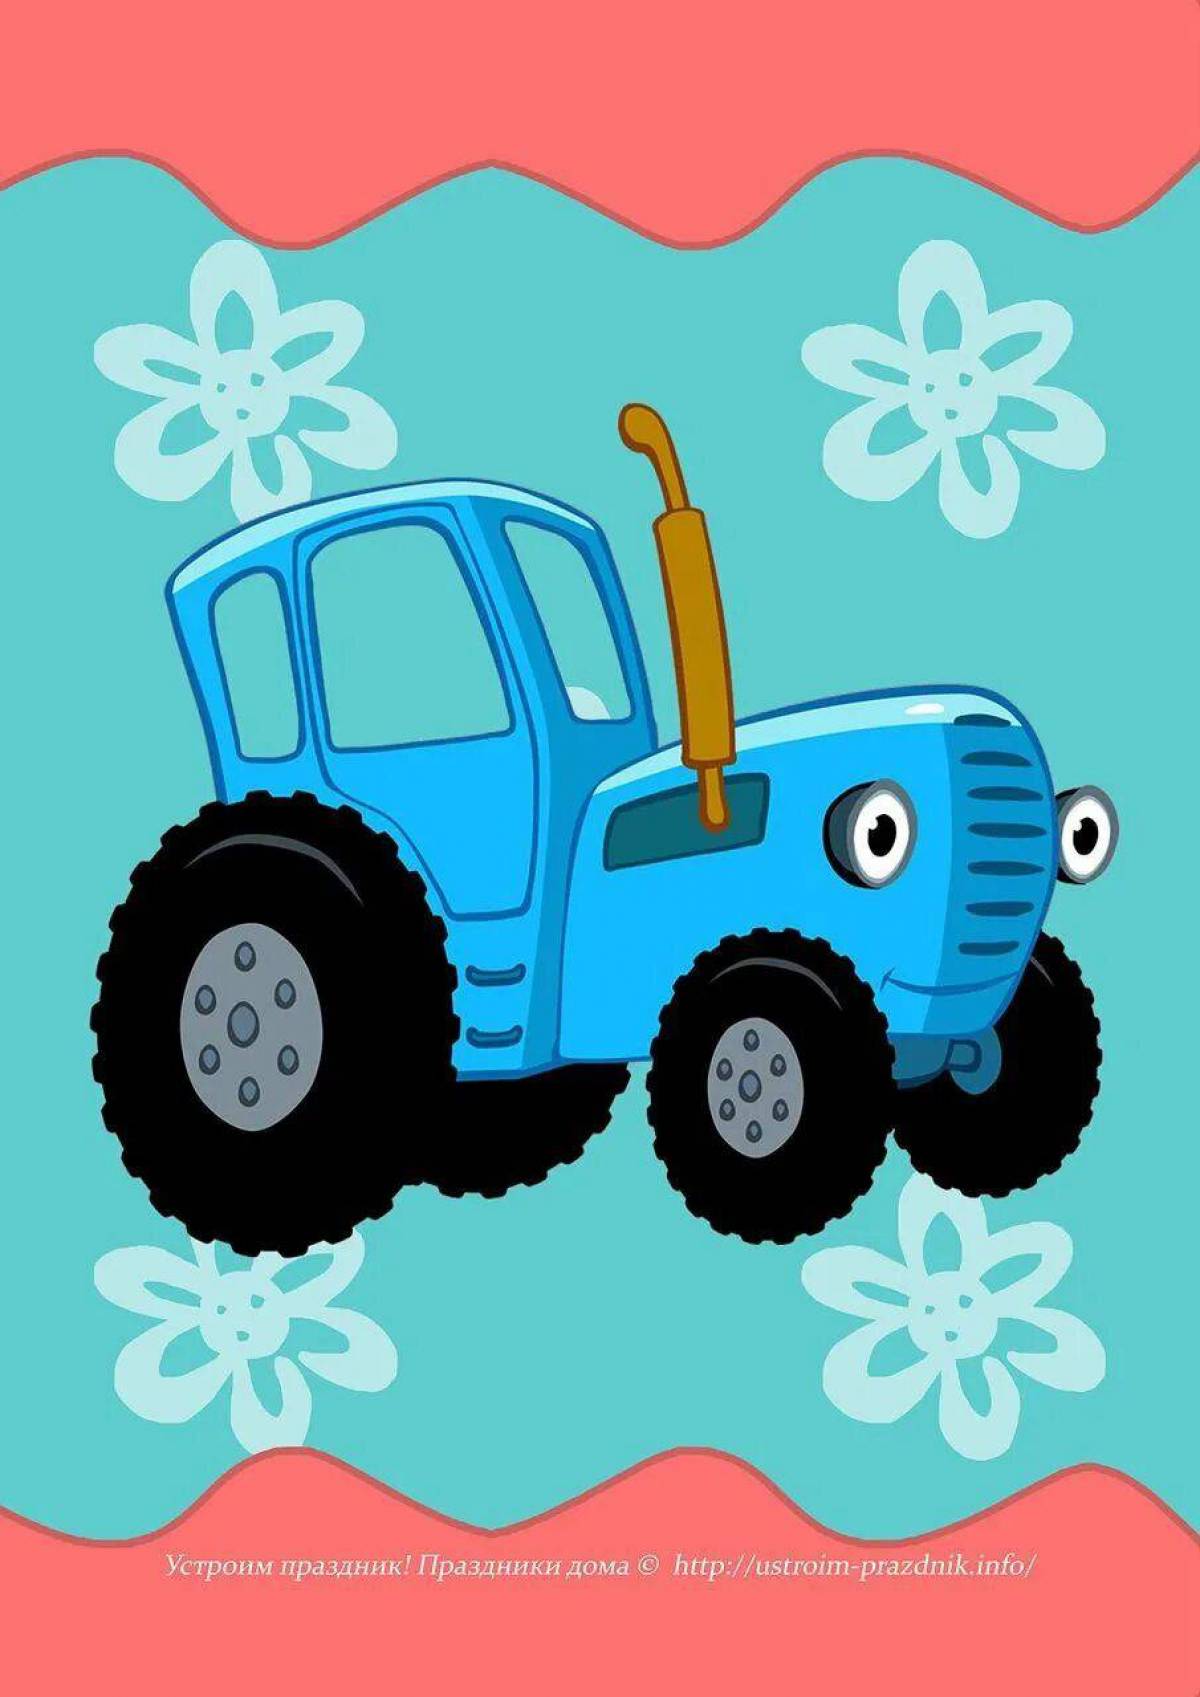 Простой синий трактор. Трактор ХТЗ синий. Синий трактор тр тр тр.